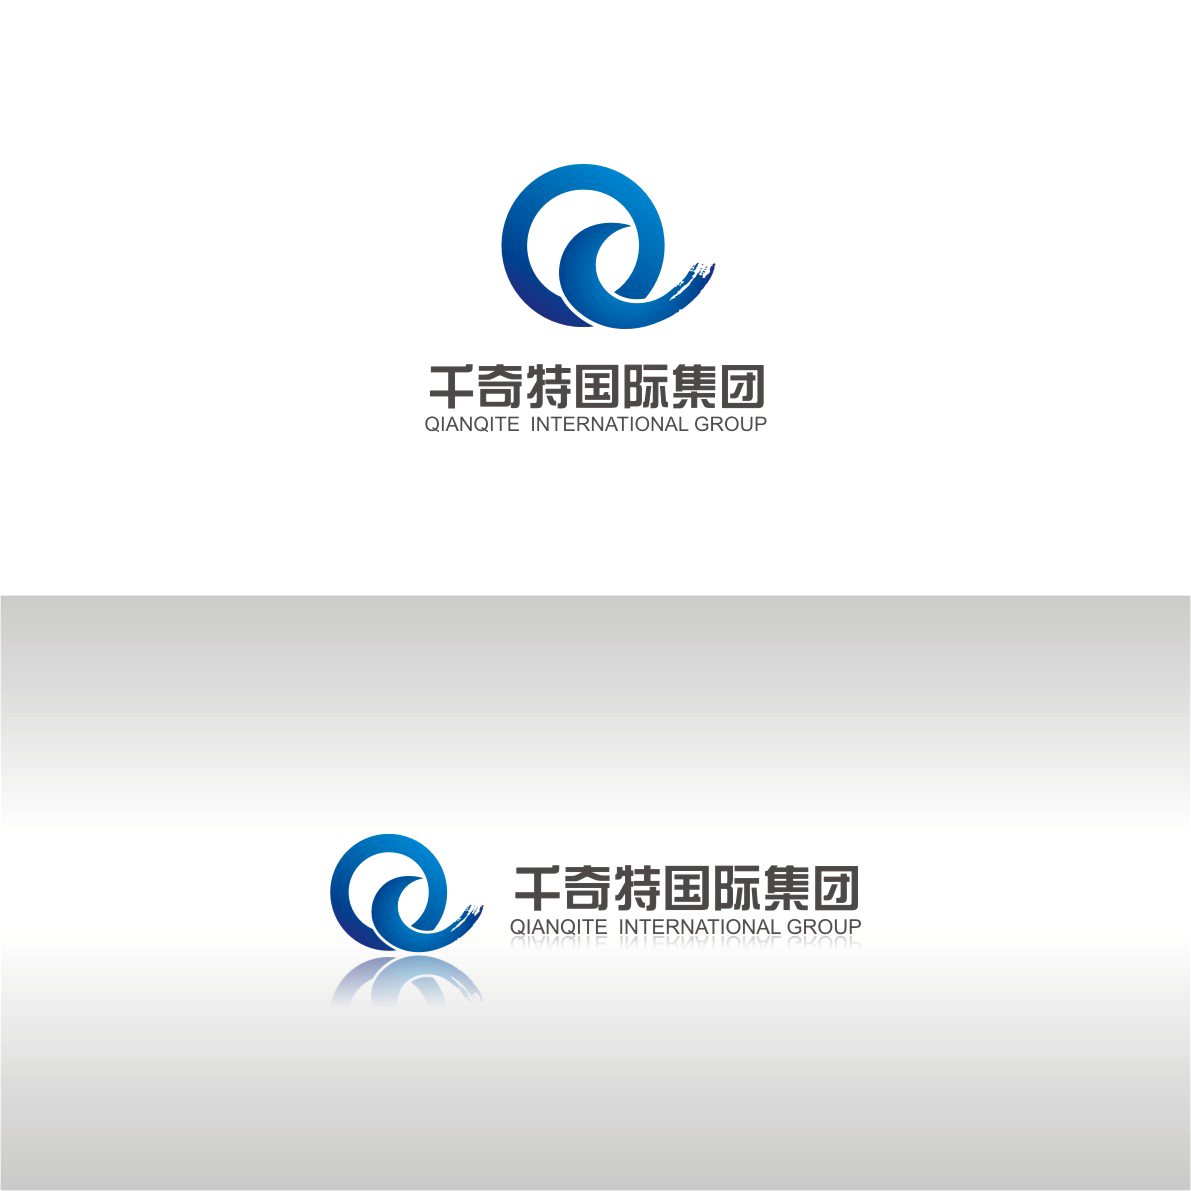 千奇特国际集团(中国)投资有限公司logo设计